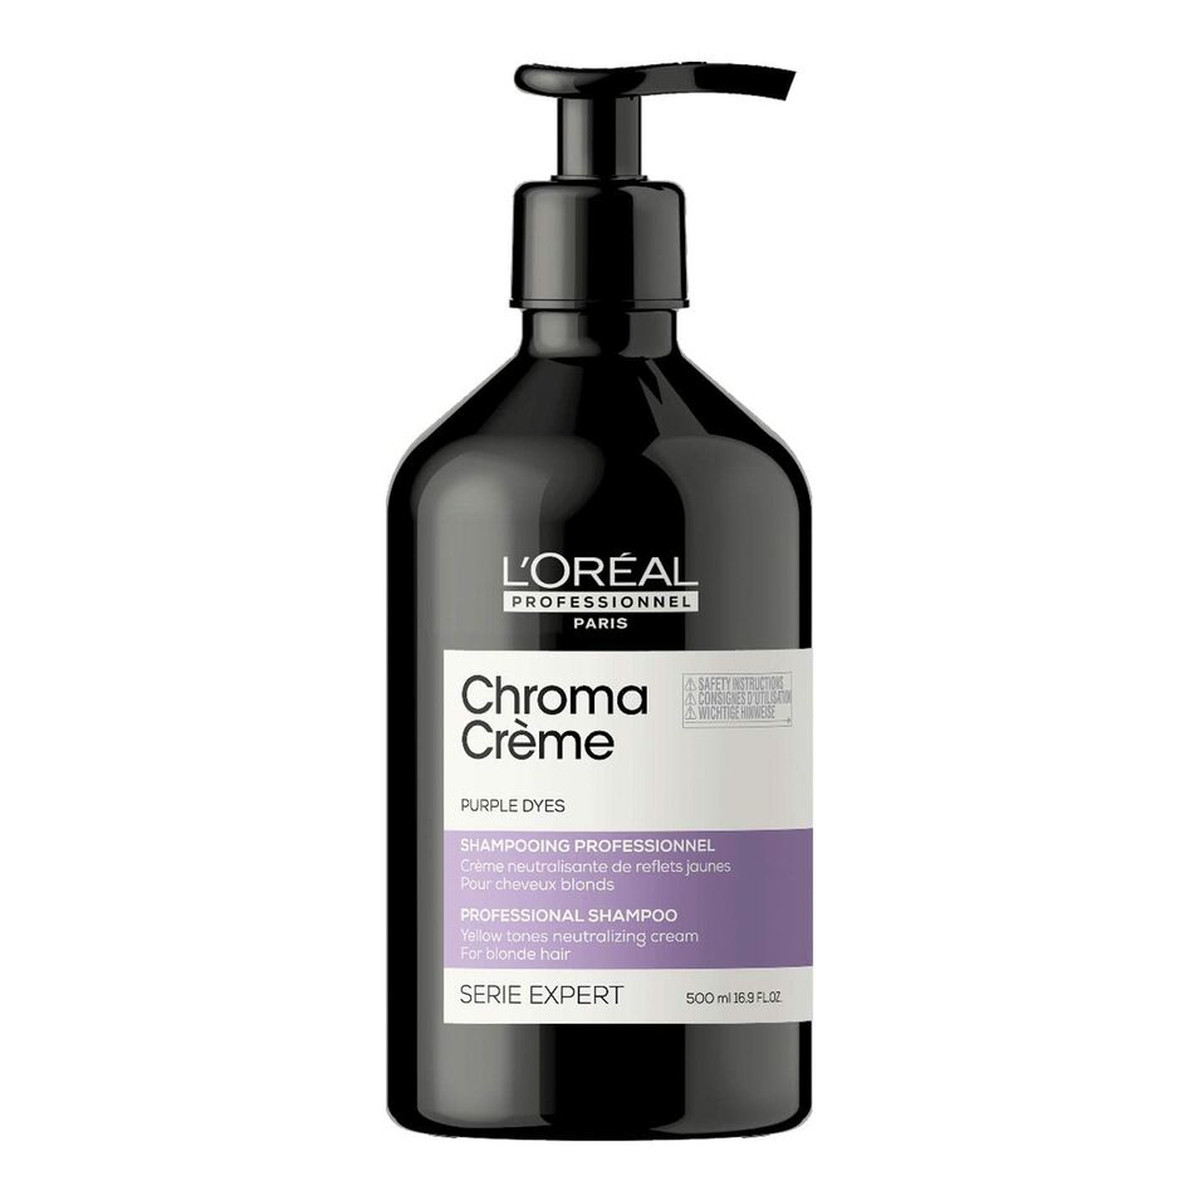 L'Oreal Paris Serie Expert Chroma Creme Purple Shampoo kremowy szampon do neutralizacji żółtych tonów na włosach blond 500ml